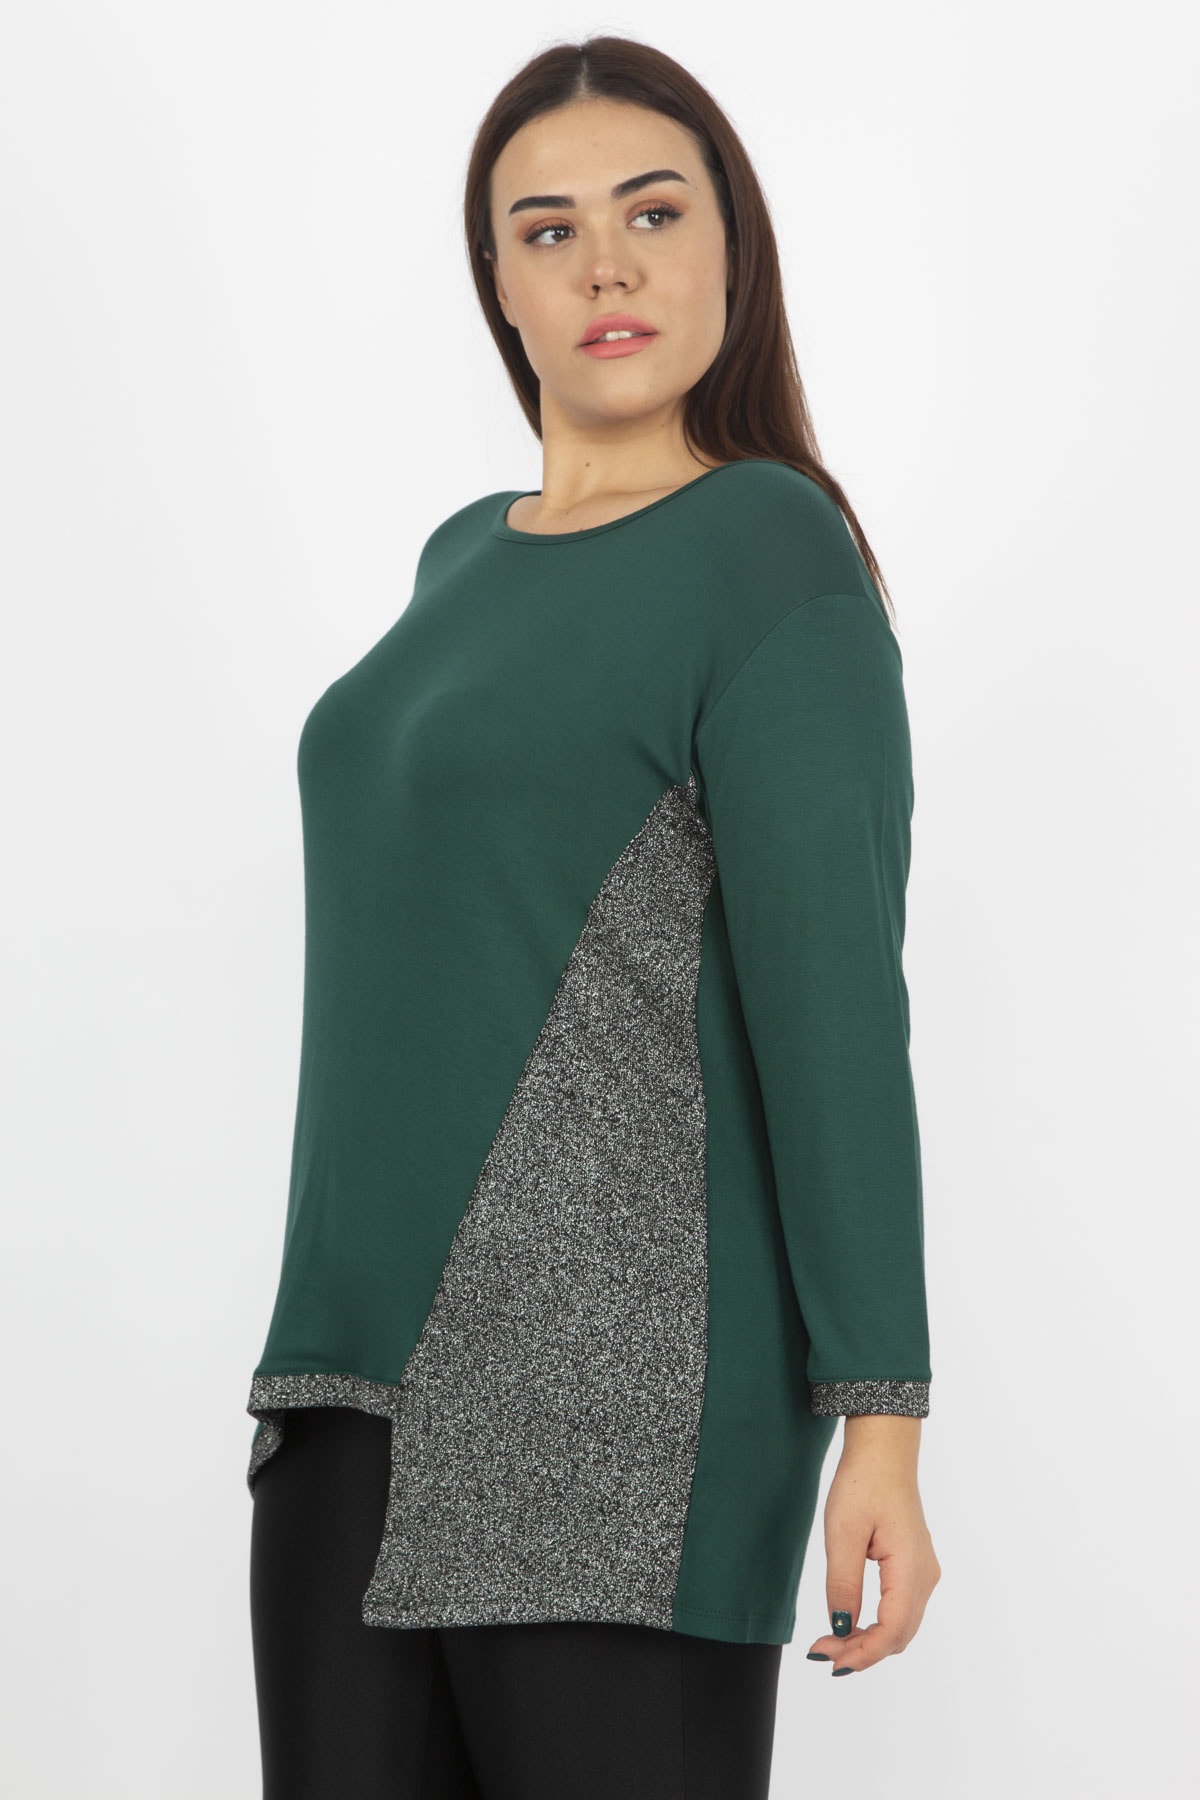 Женская блузка большого размера с зеленой блестящей отделкой 65n18967 Şans, зеленый женская желтая блузка большого размера с боковым разрезом спереди şans желтый